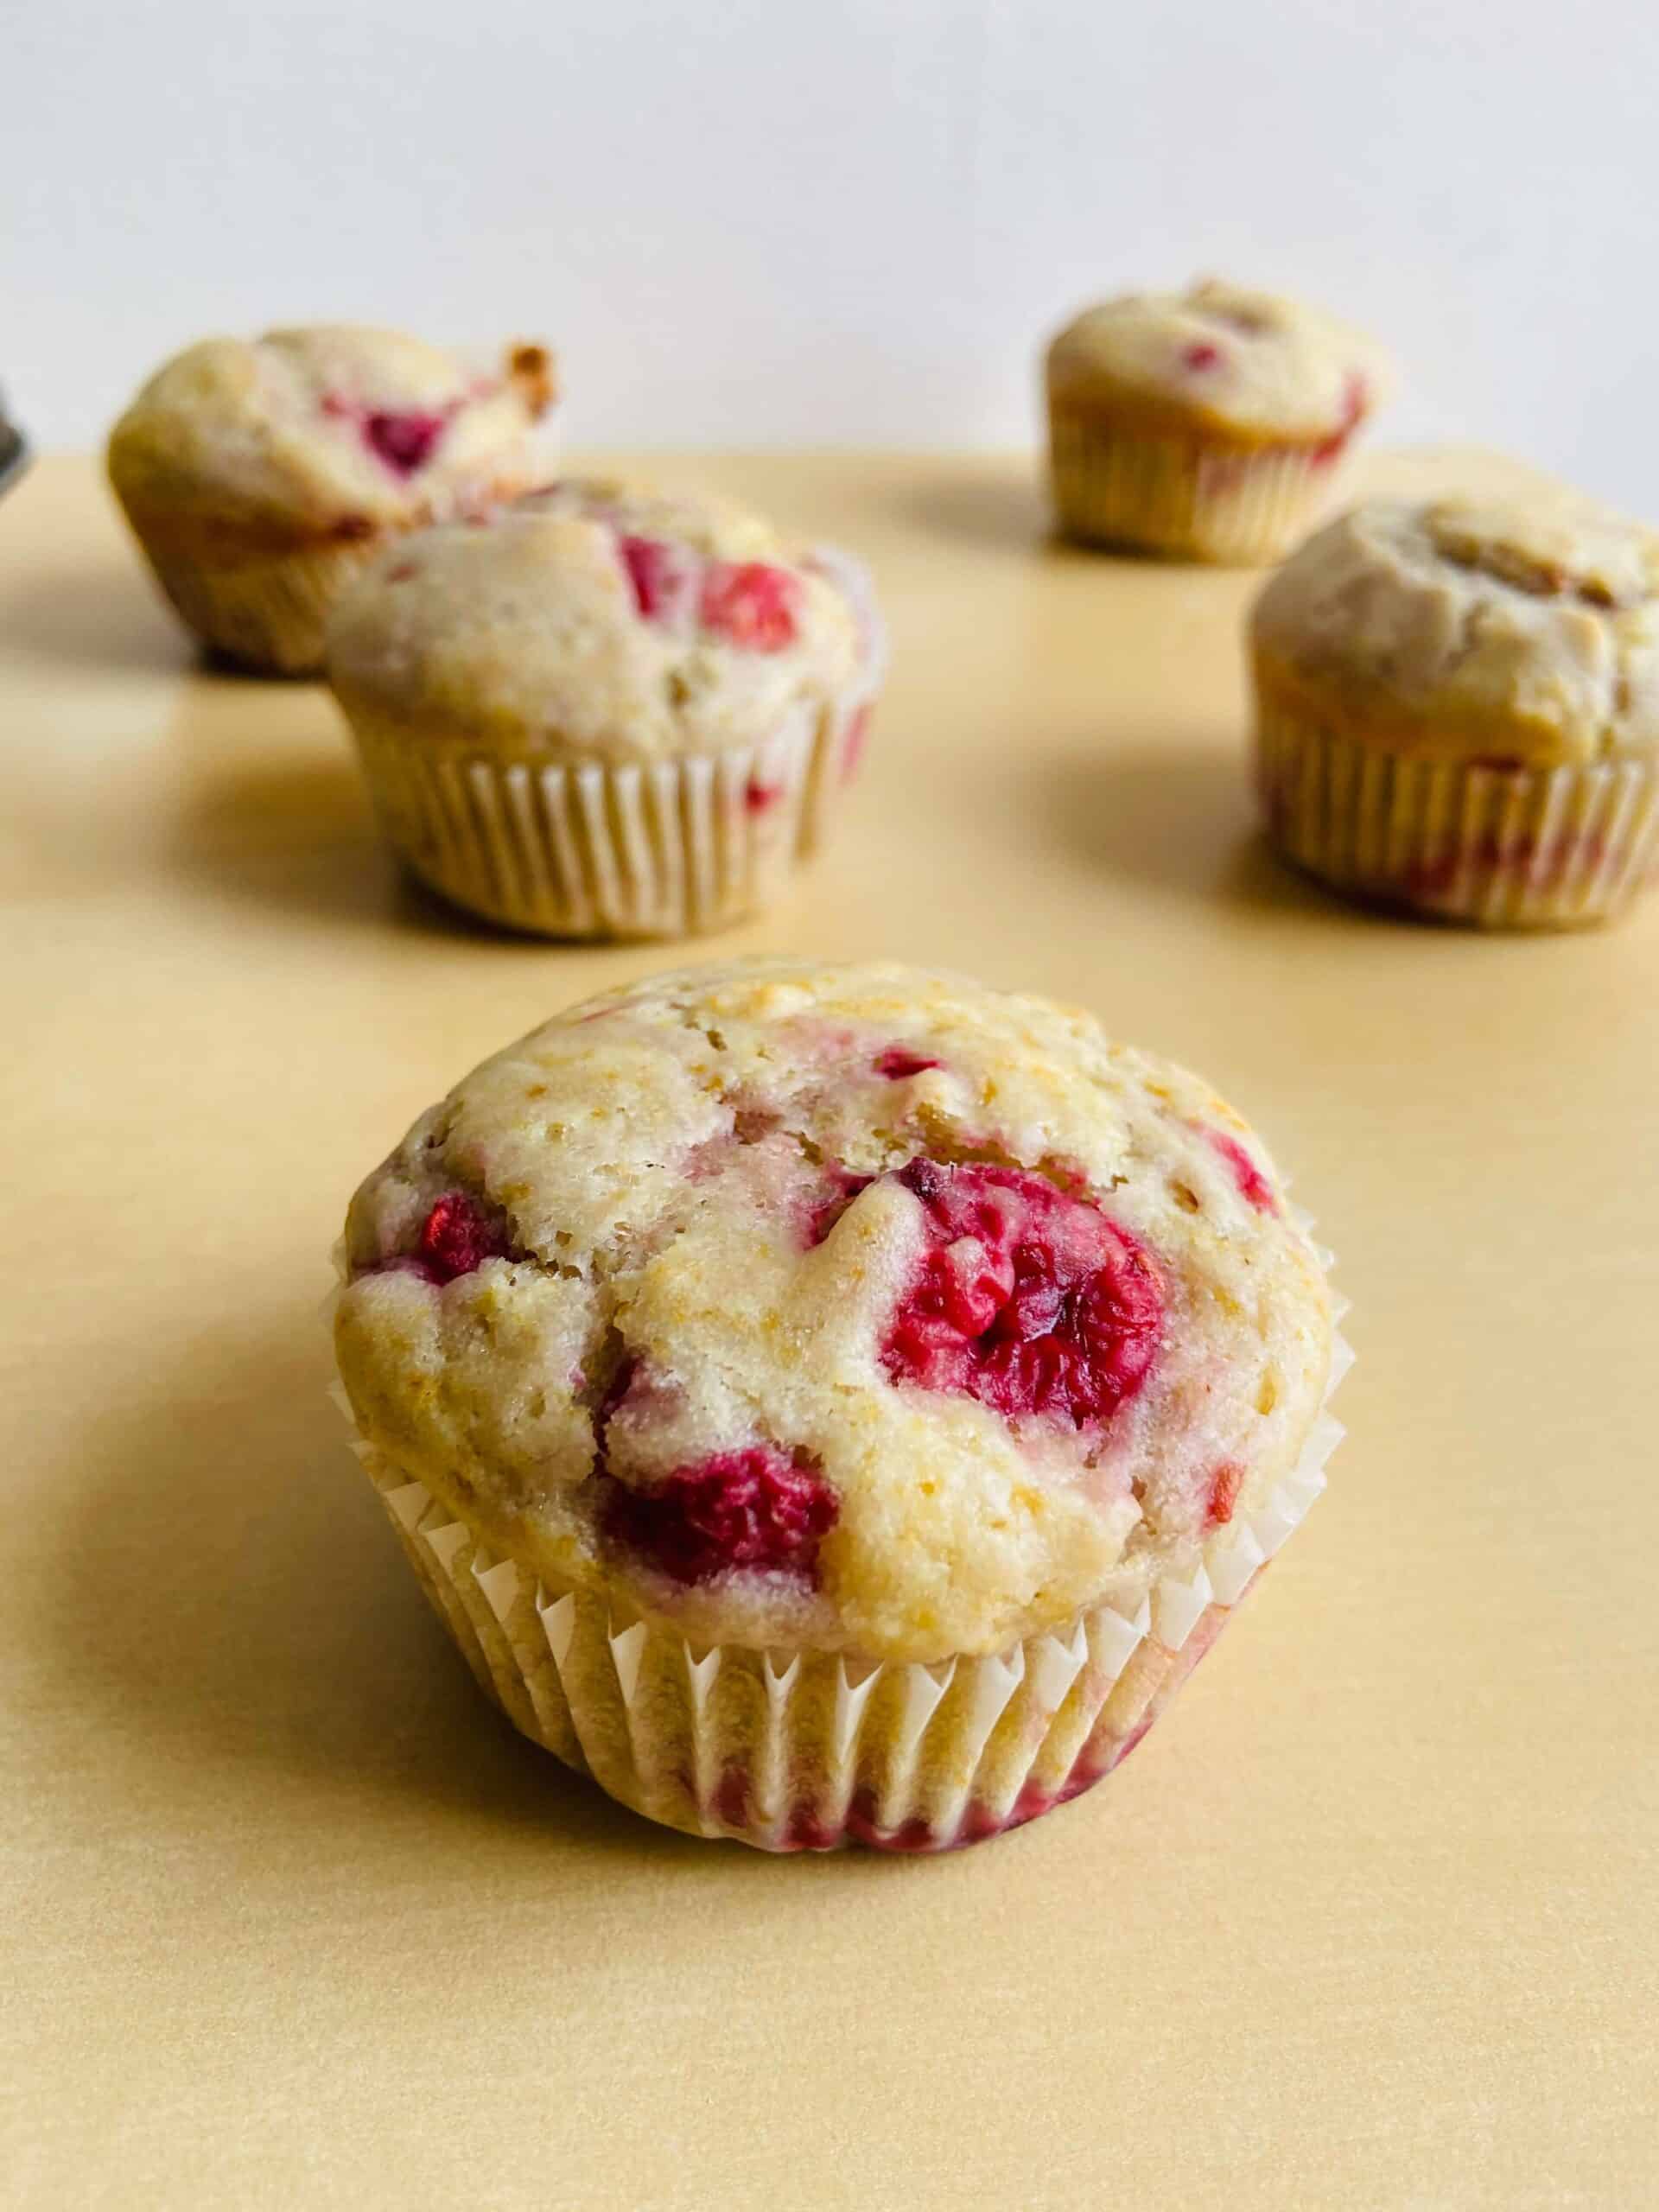 Vegan Raspberry Muffins with Cream Cheese Frosting - Yum Vegan Blog